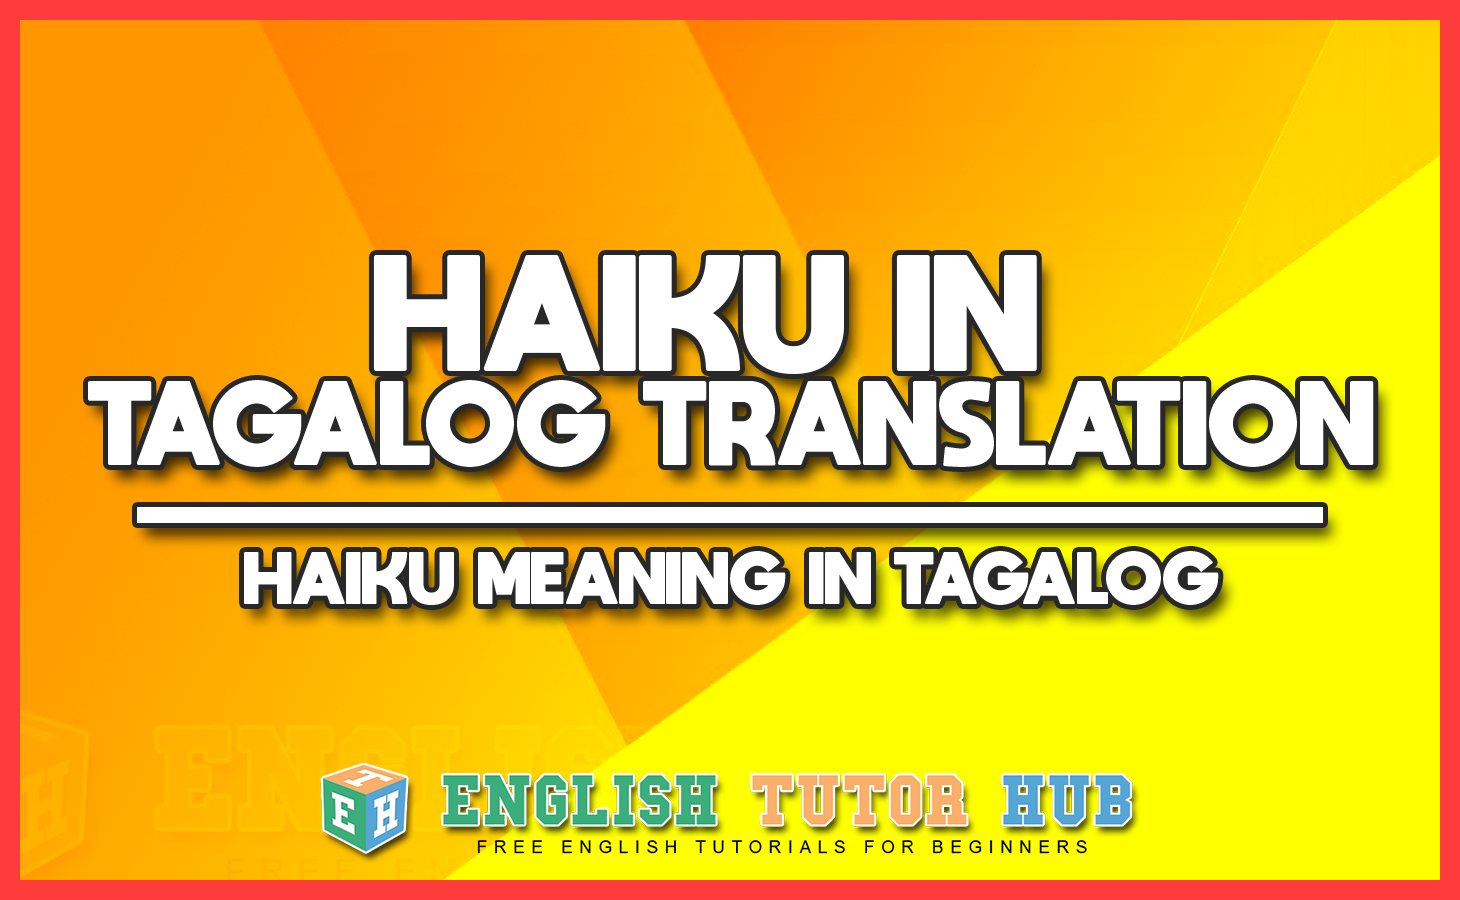 Haiku In Tagalog Translation – Haiku Meaning In Tagalog